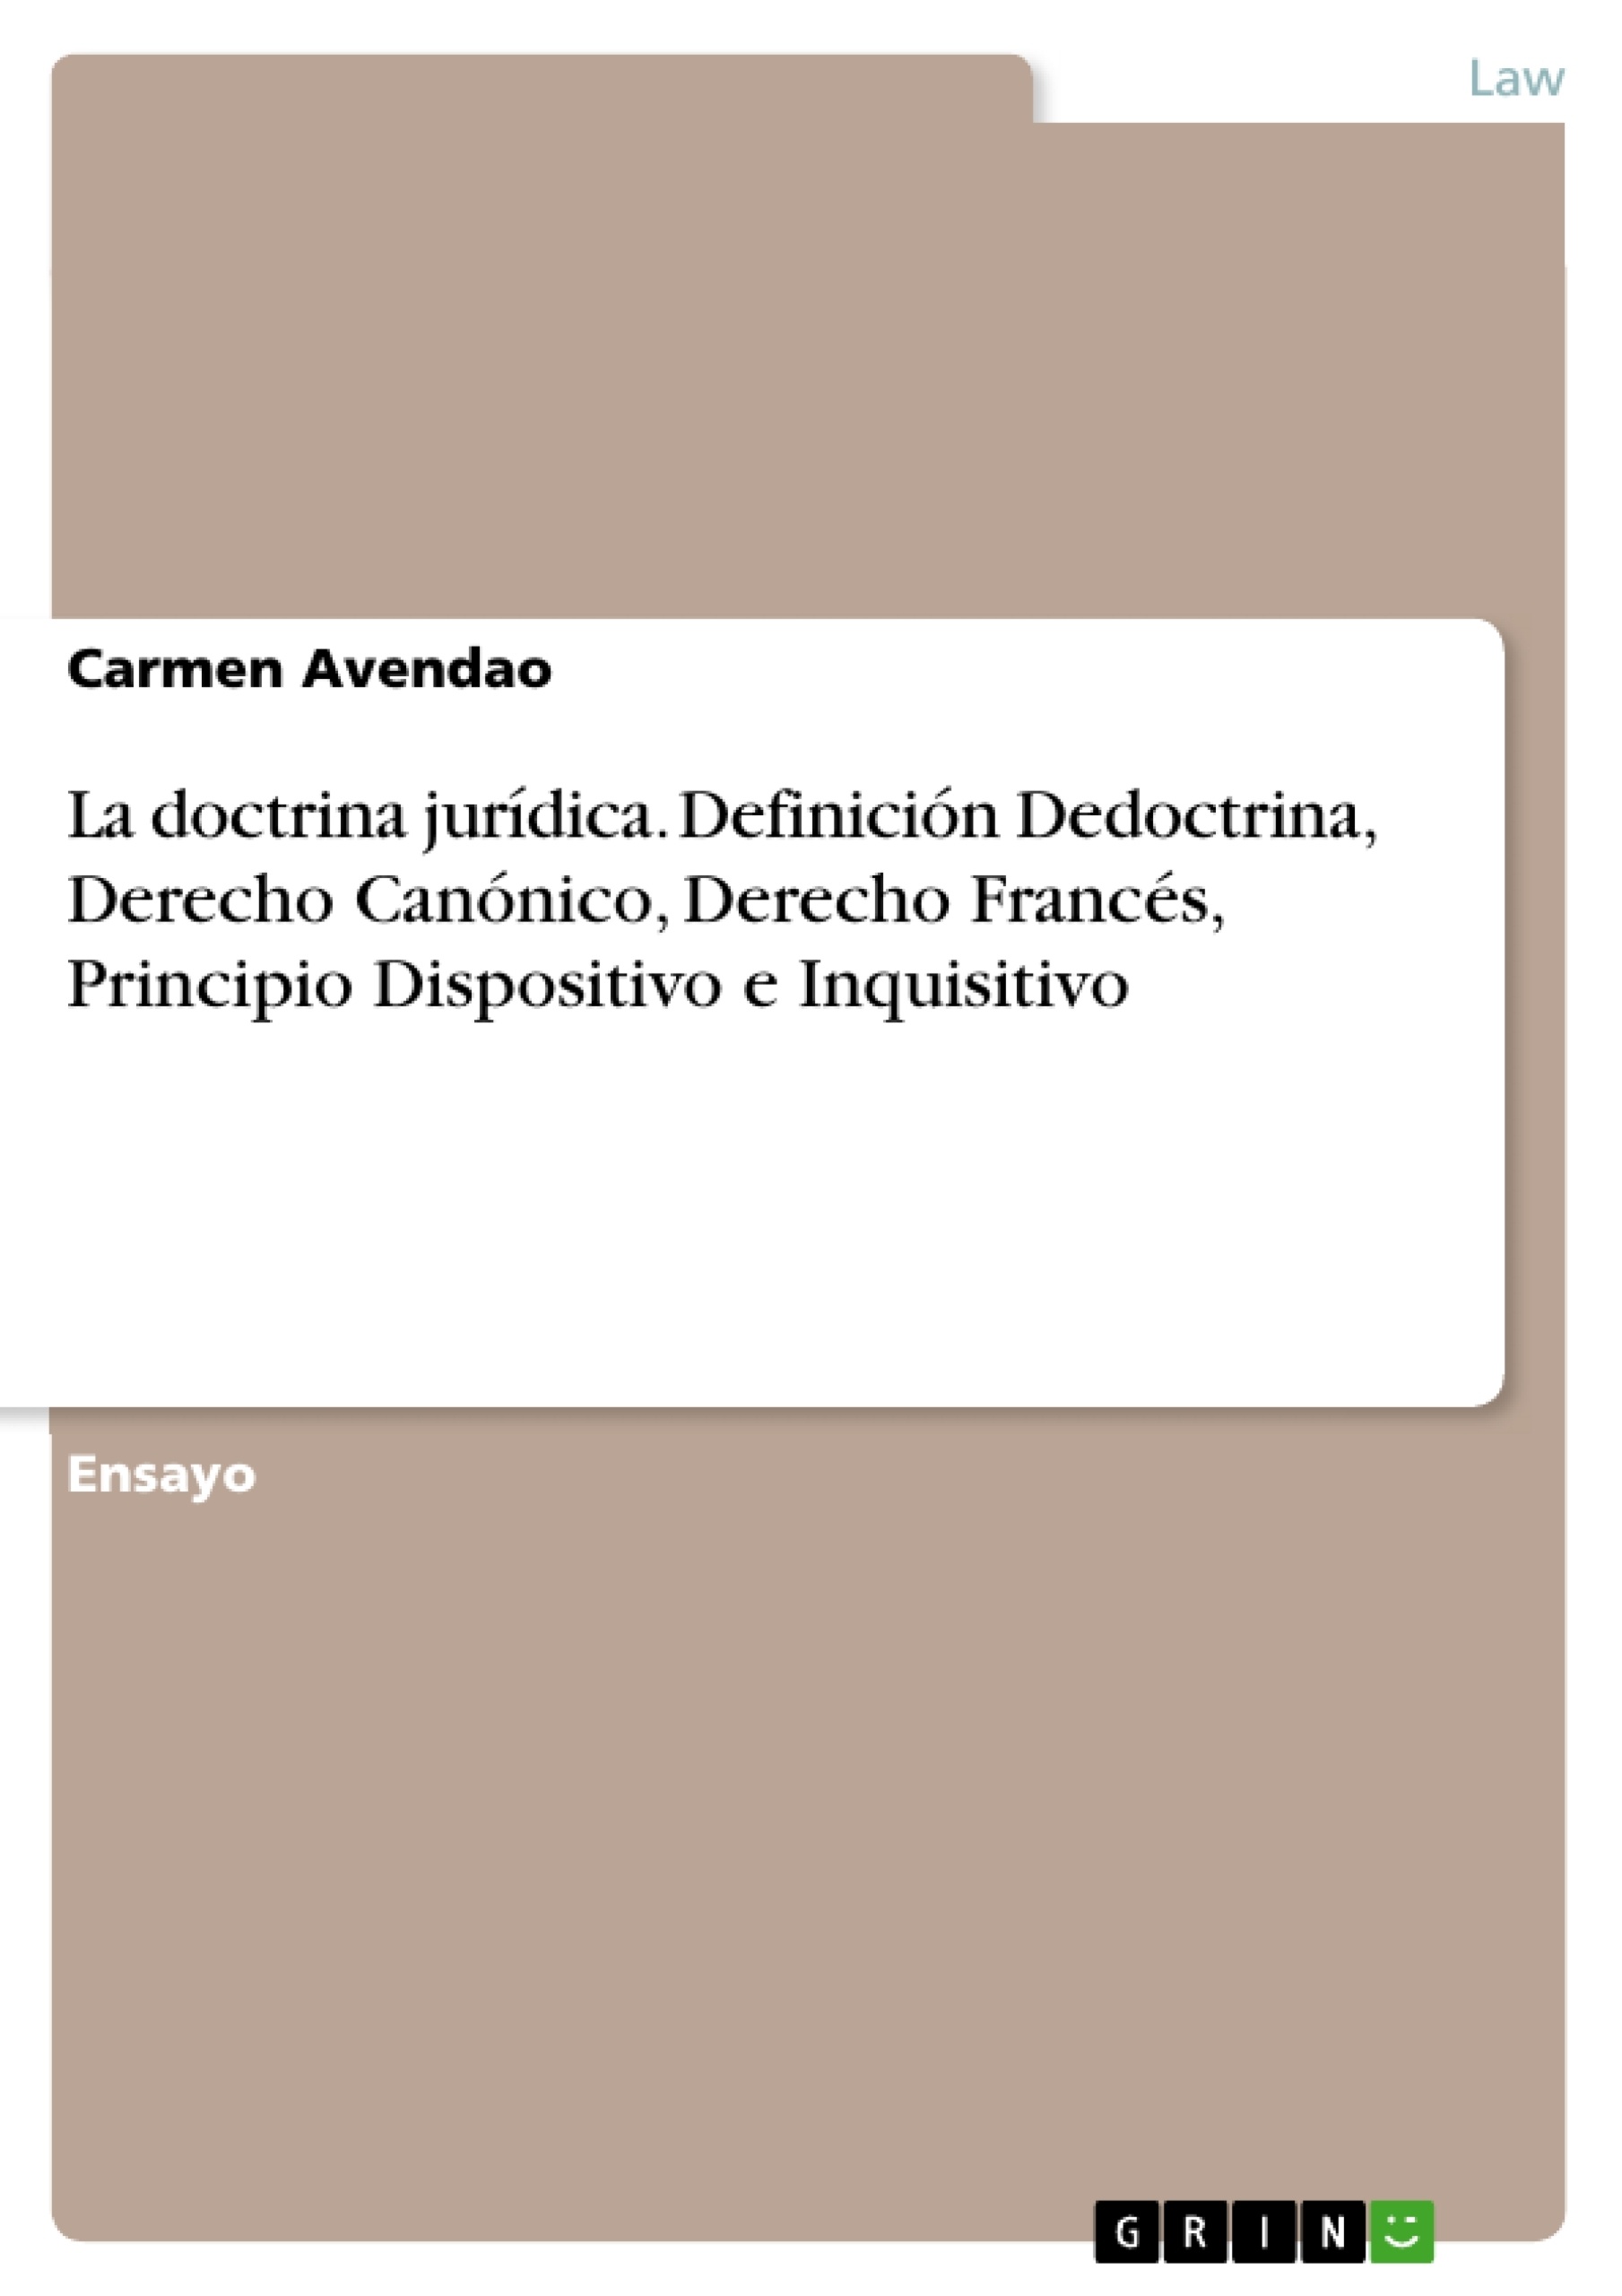 Título: La doctrina jurídica. Definición Dedoctrina, Derecho Canónico, Derecho Francés, Principio Dispositivo e Inquisitivo